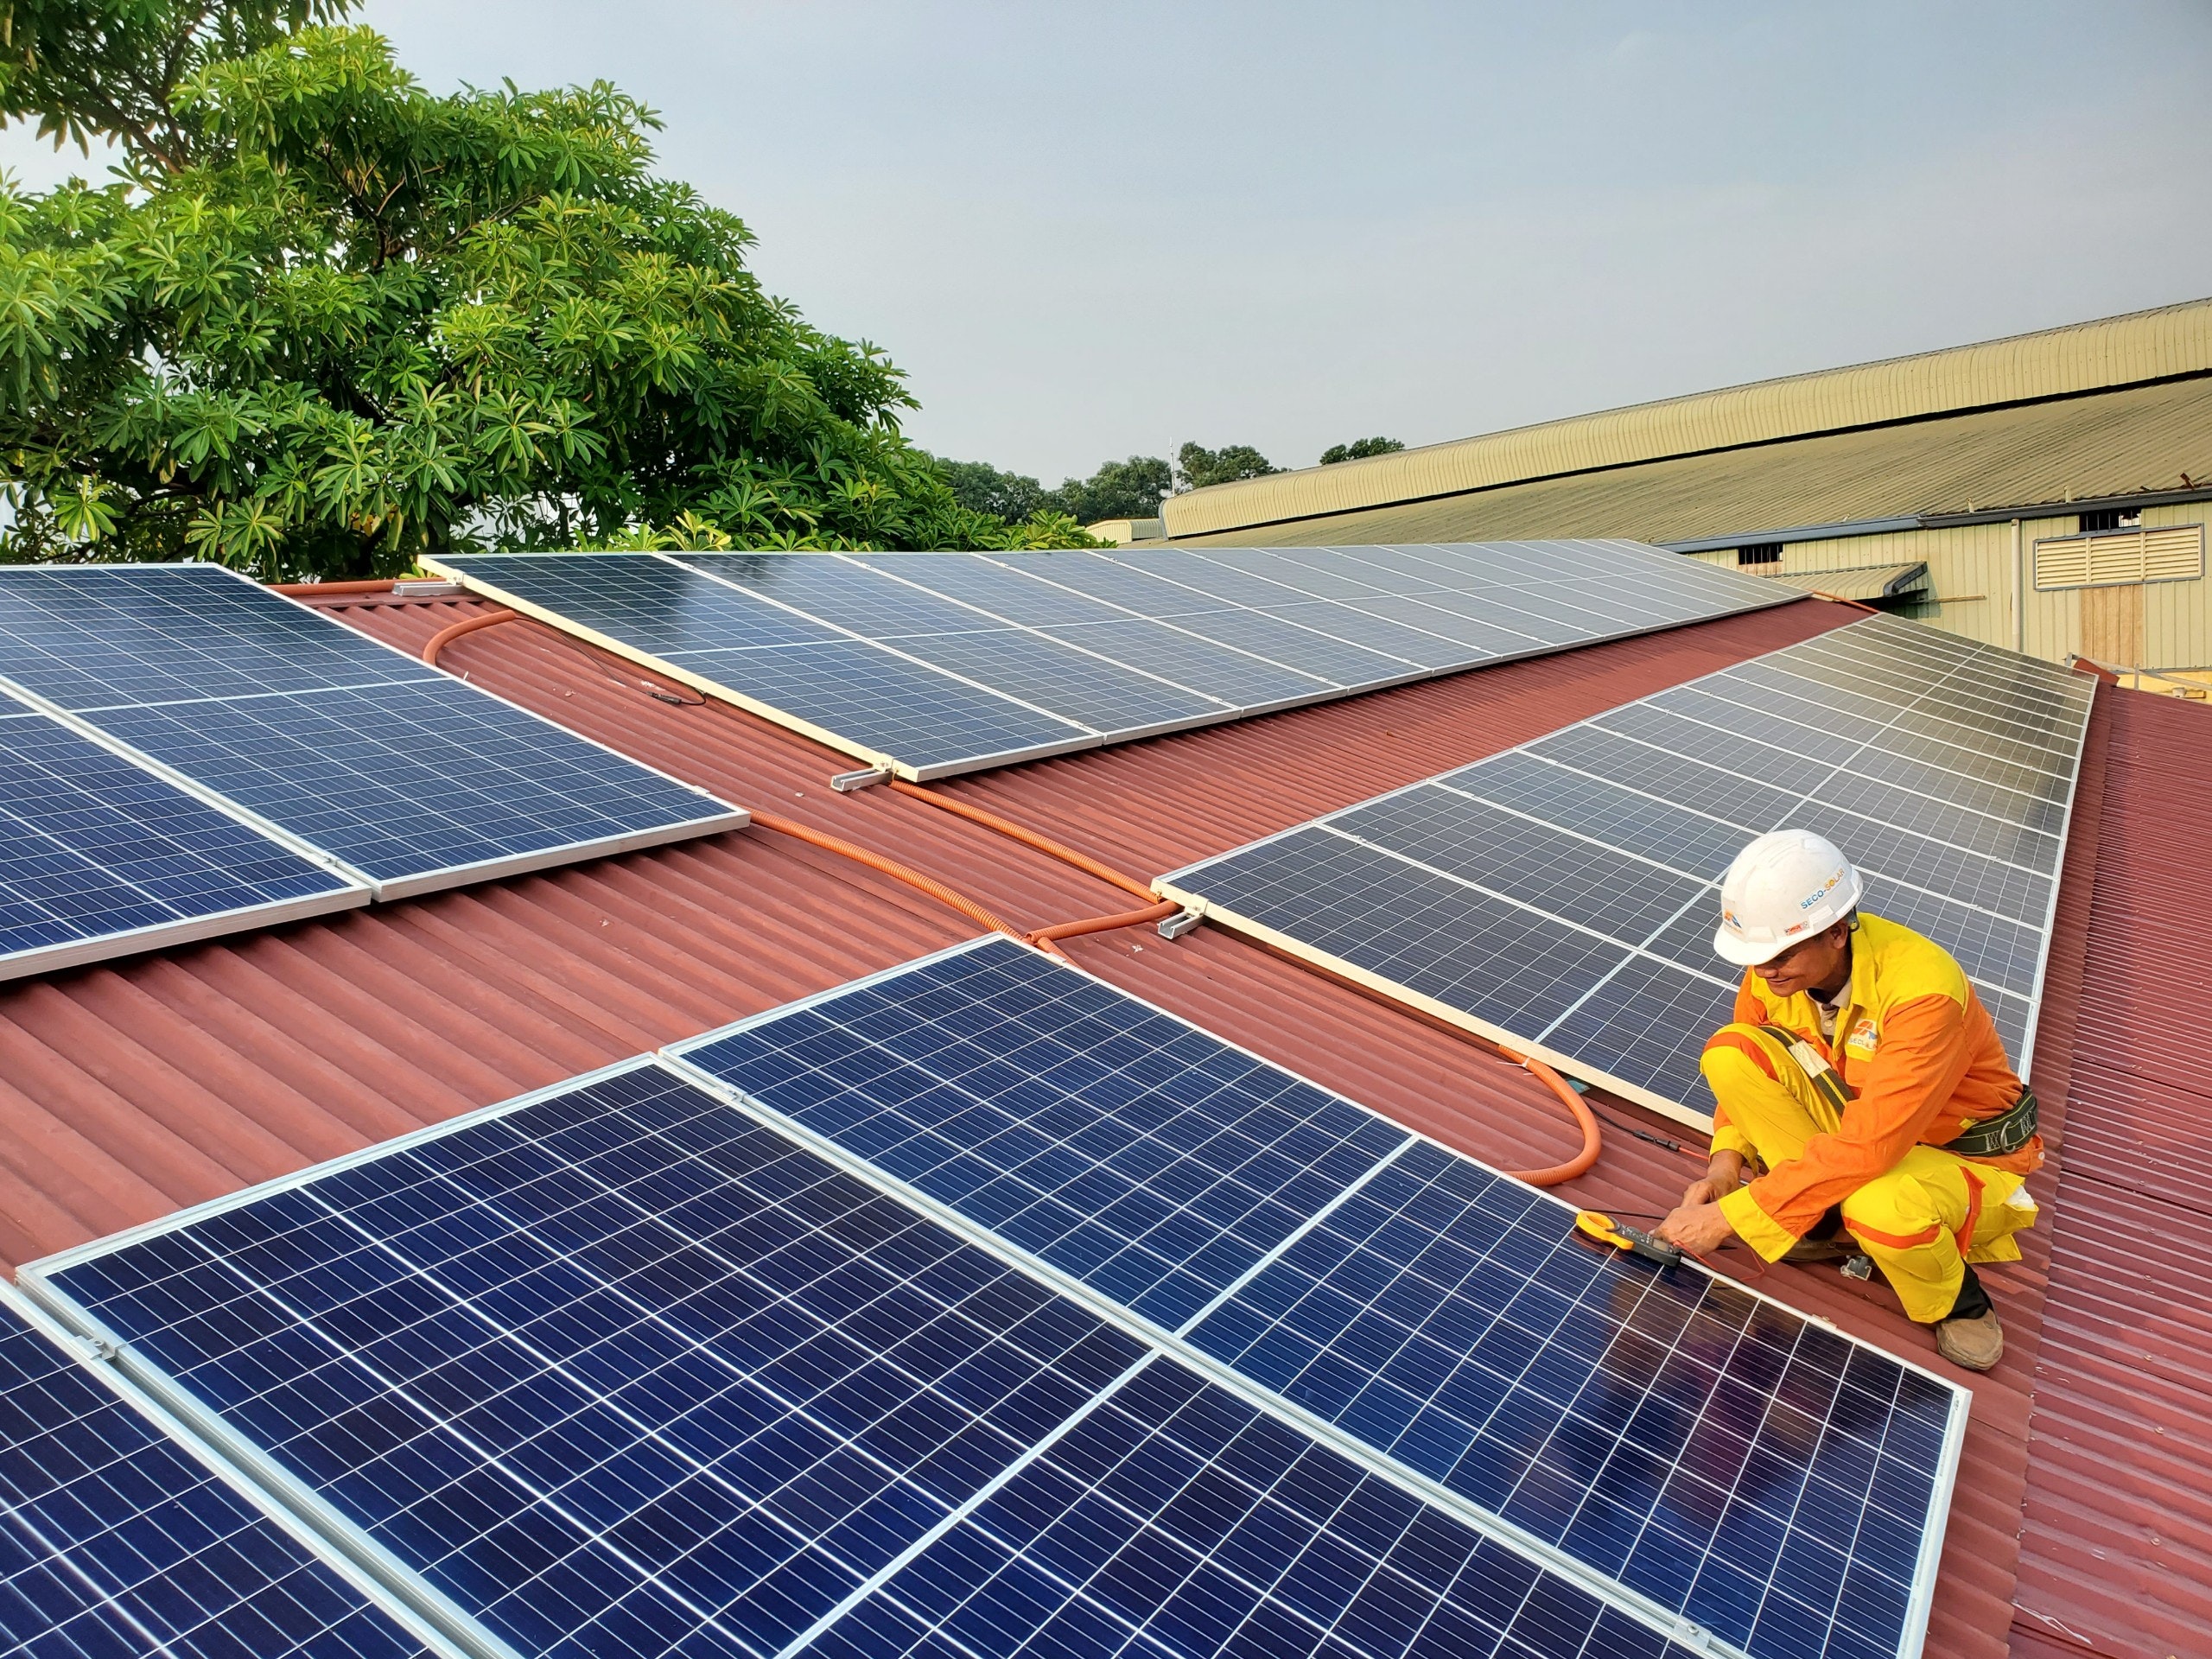 Bilden visar en solcells installtion. Med erfaren takläggare kan du utföra takbyte och installera solceller samtidigt hos exempelvis takbytenivast.se finns massor med inspiration.